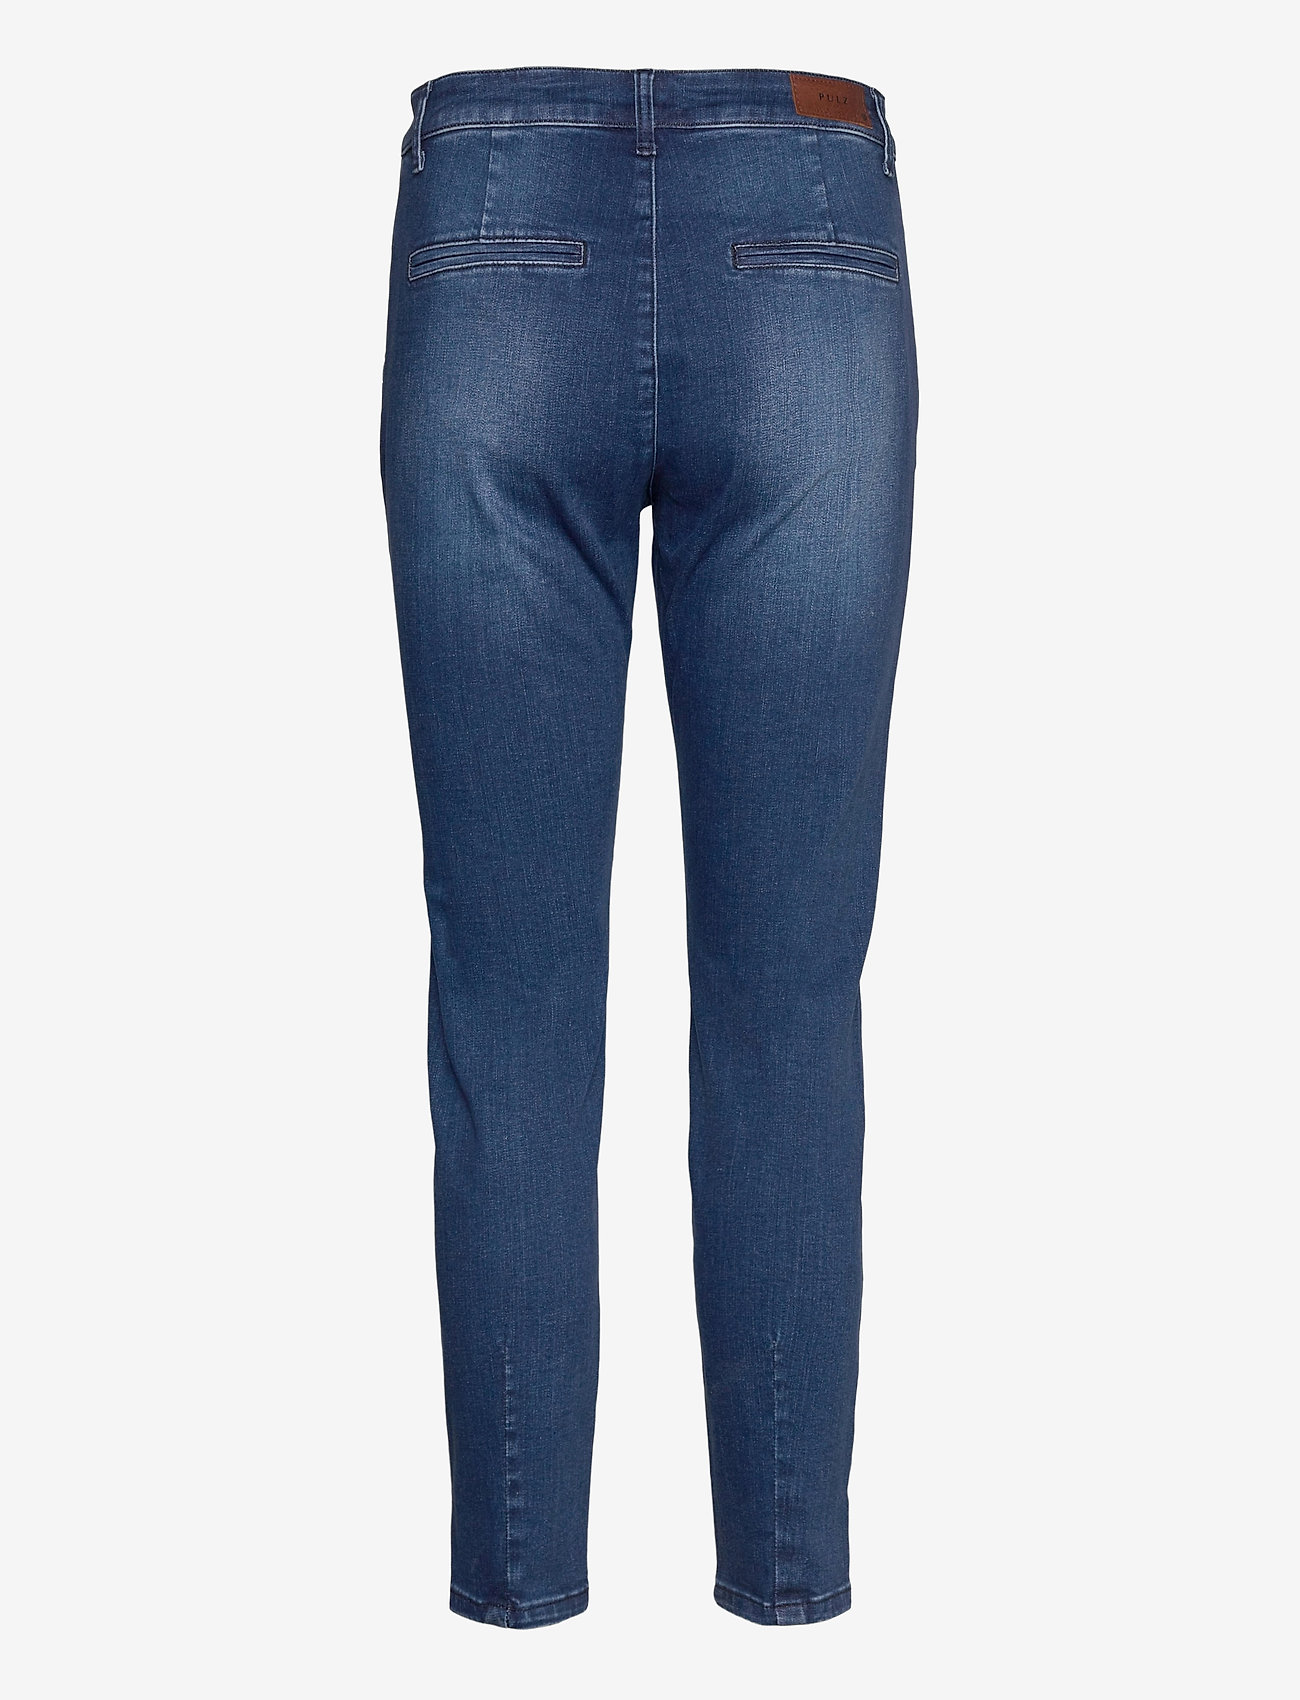 Pulz Jeans - PZCLARA Jeans - wąskie dżinsy - dark blue denim - 1